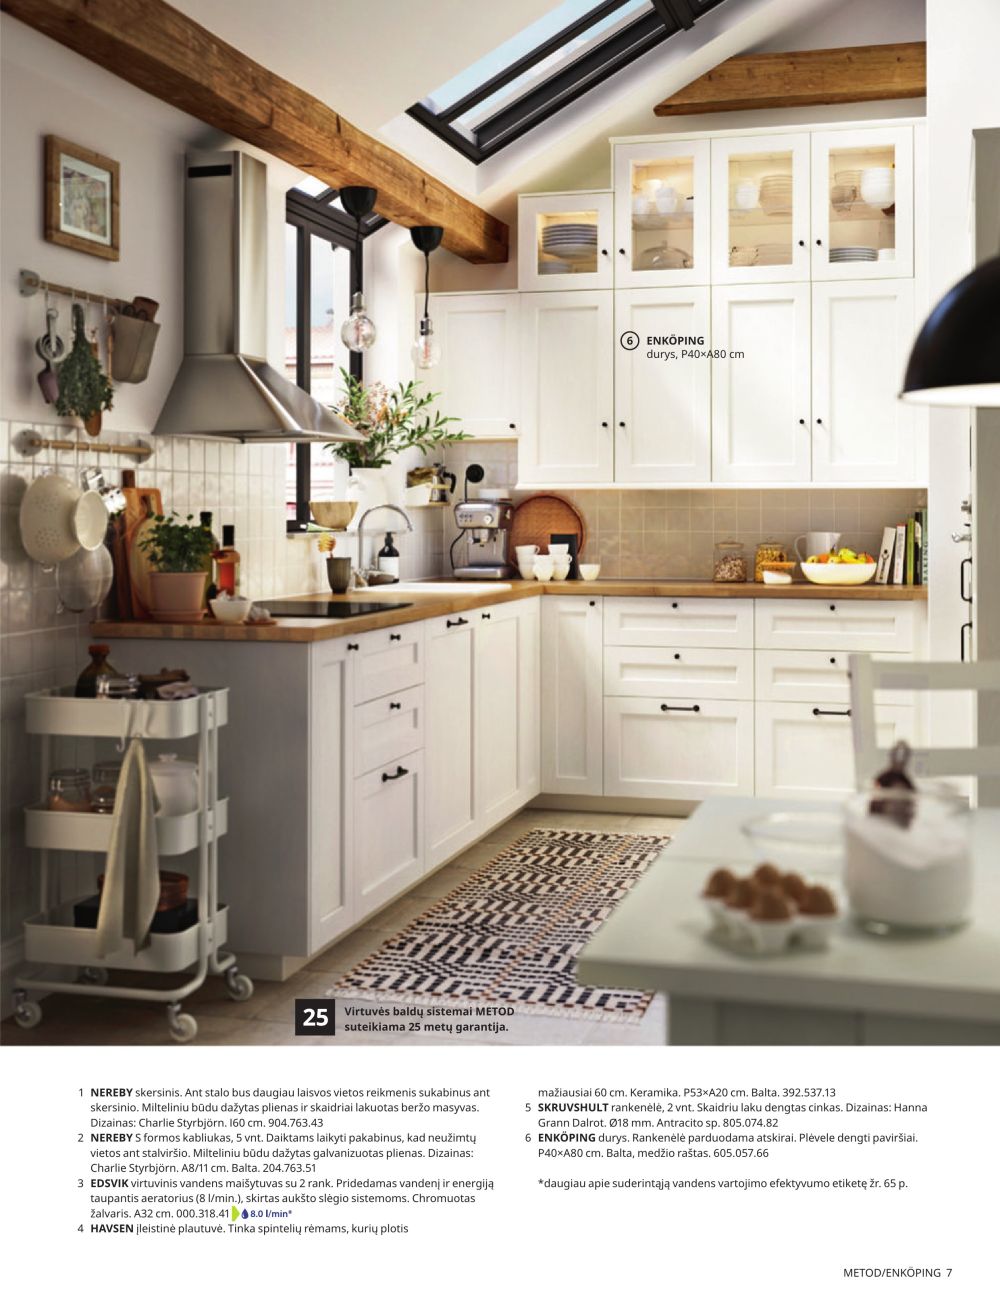 ikea - IKEA - Virtuvė 2023 - page: 7